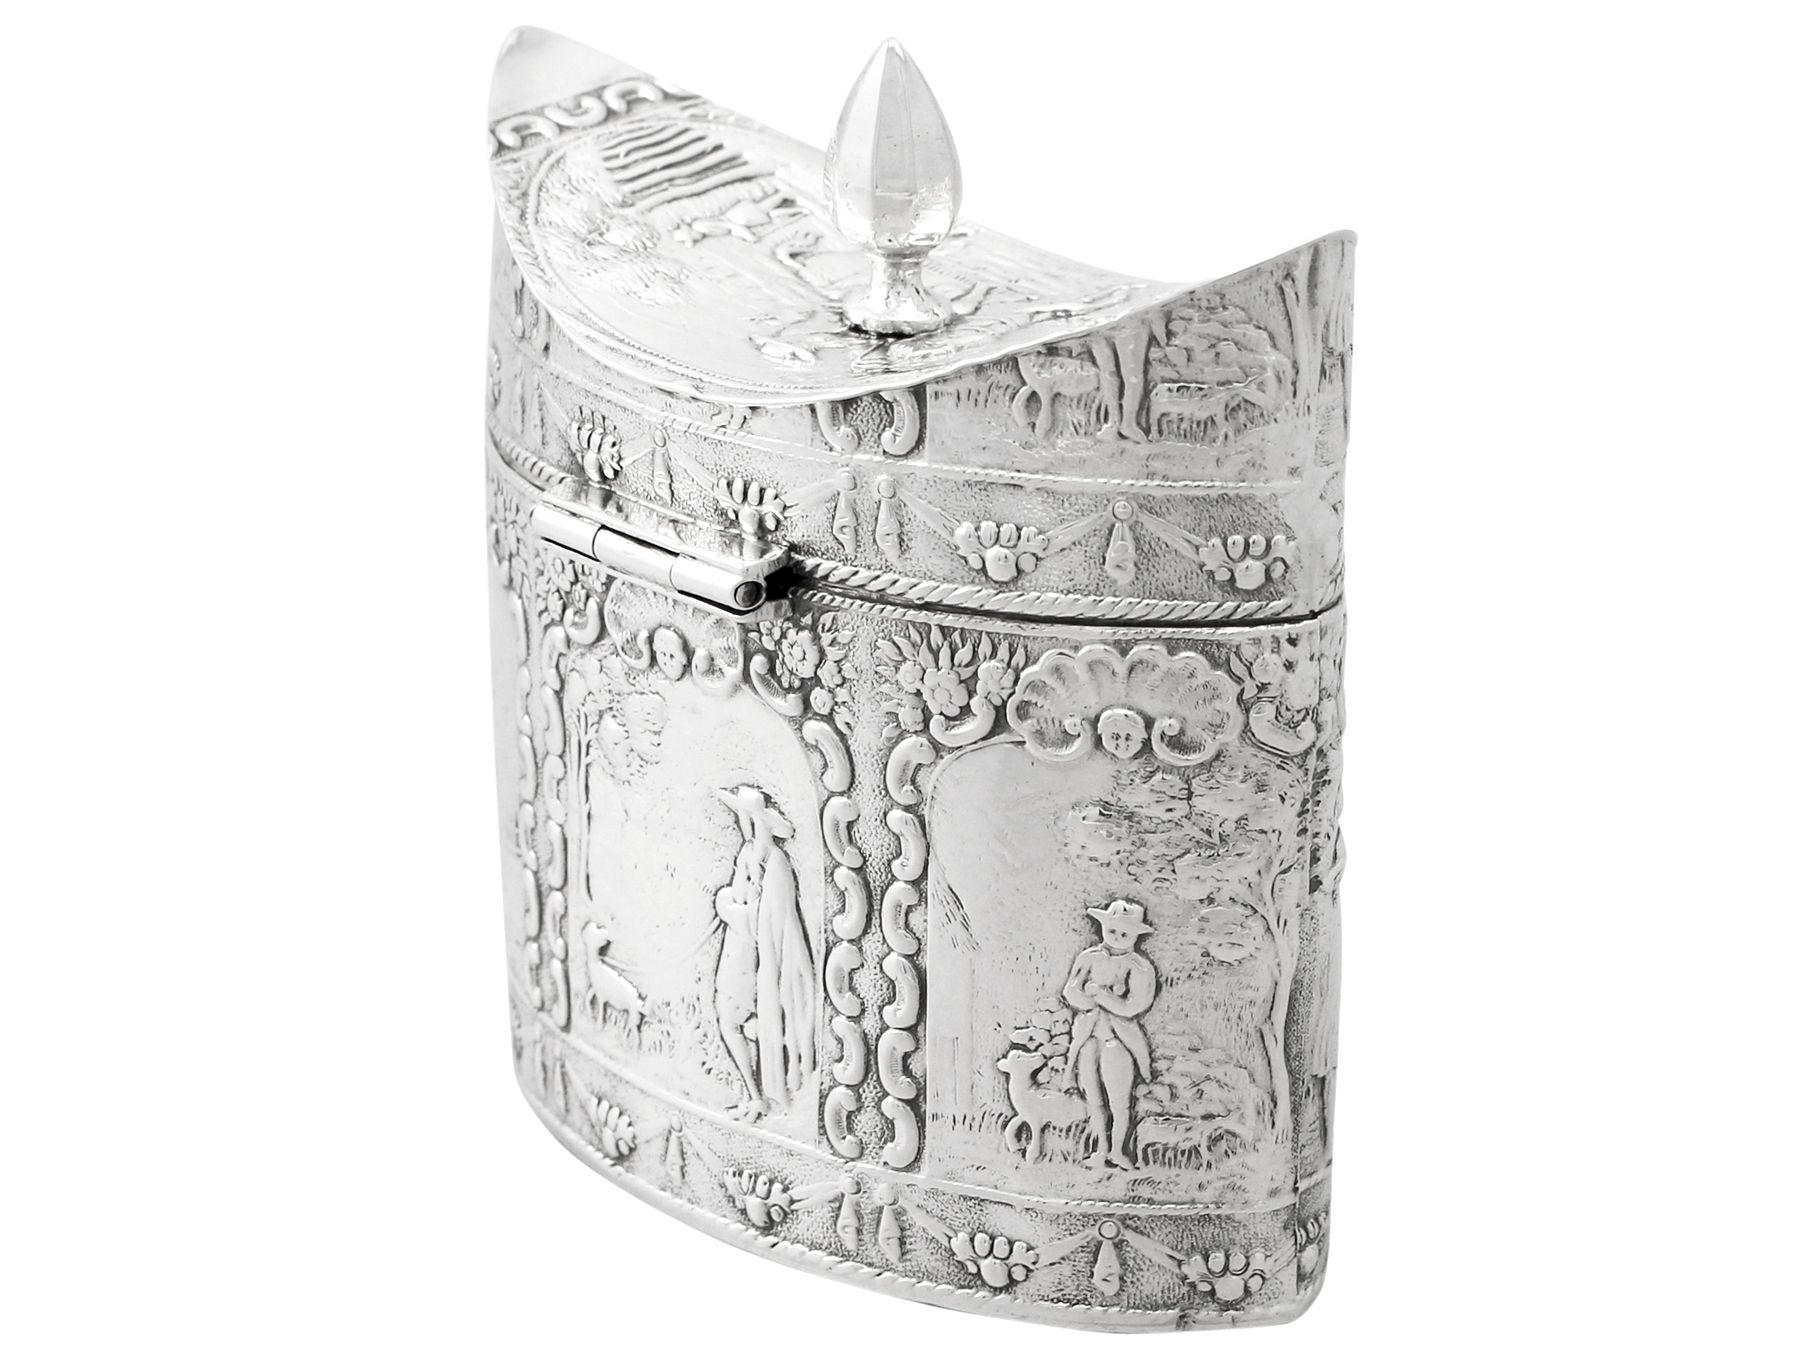 Eine feine antike holländische Silber Teedose; eine Ergänzung zu unserer Silber Teegeschirr Sammlung.

Diese Teedose aus feinem holländischem Silber hat eine ovale Navette-Form.

Die Oberfläche dieser antiken silbernen Teedose ist mit geprägten